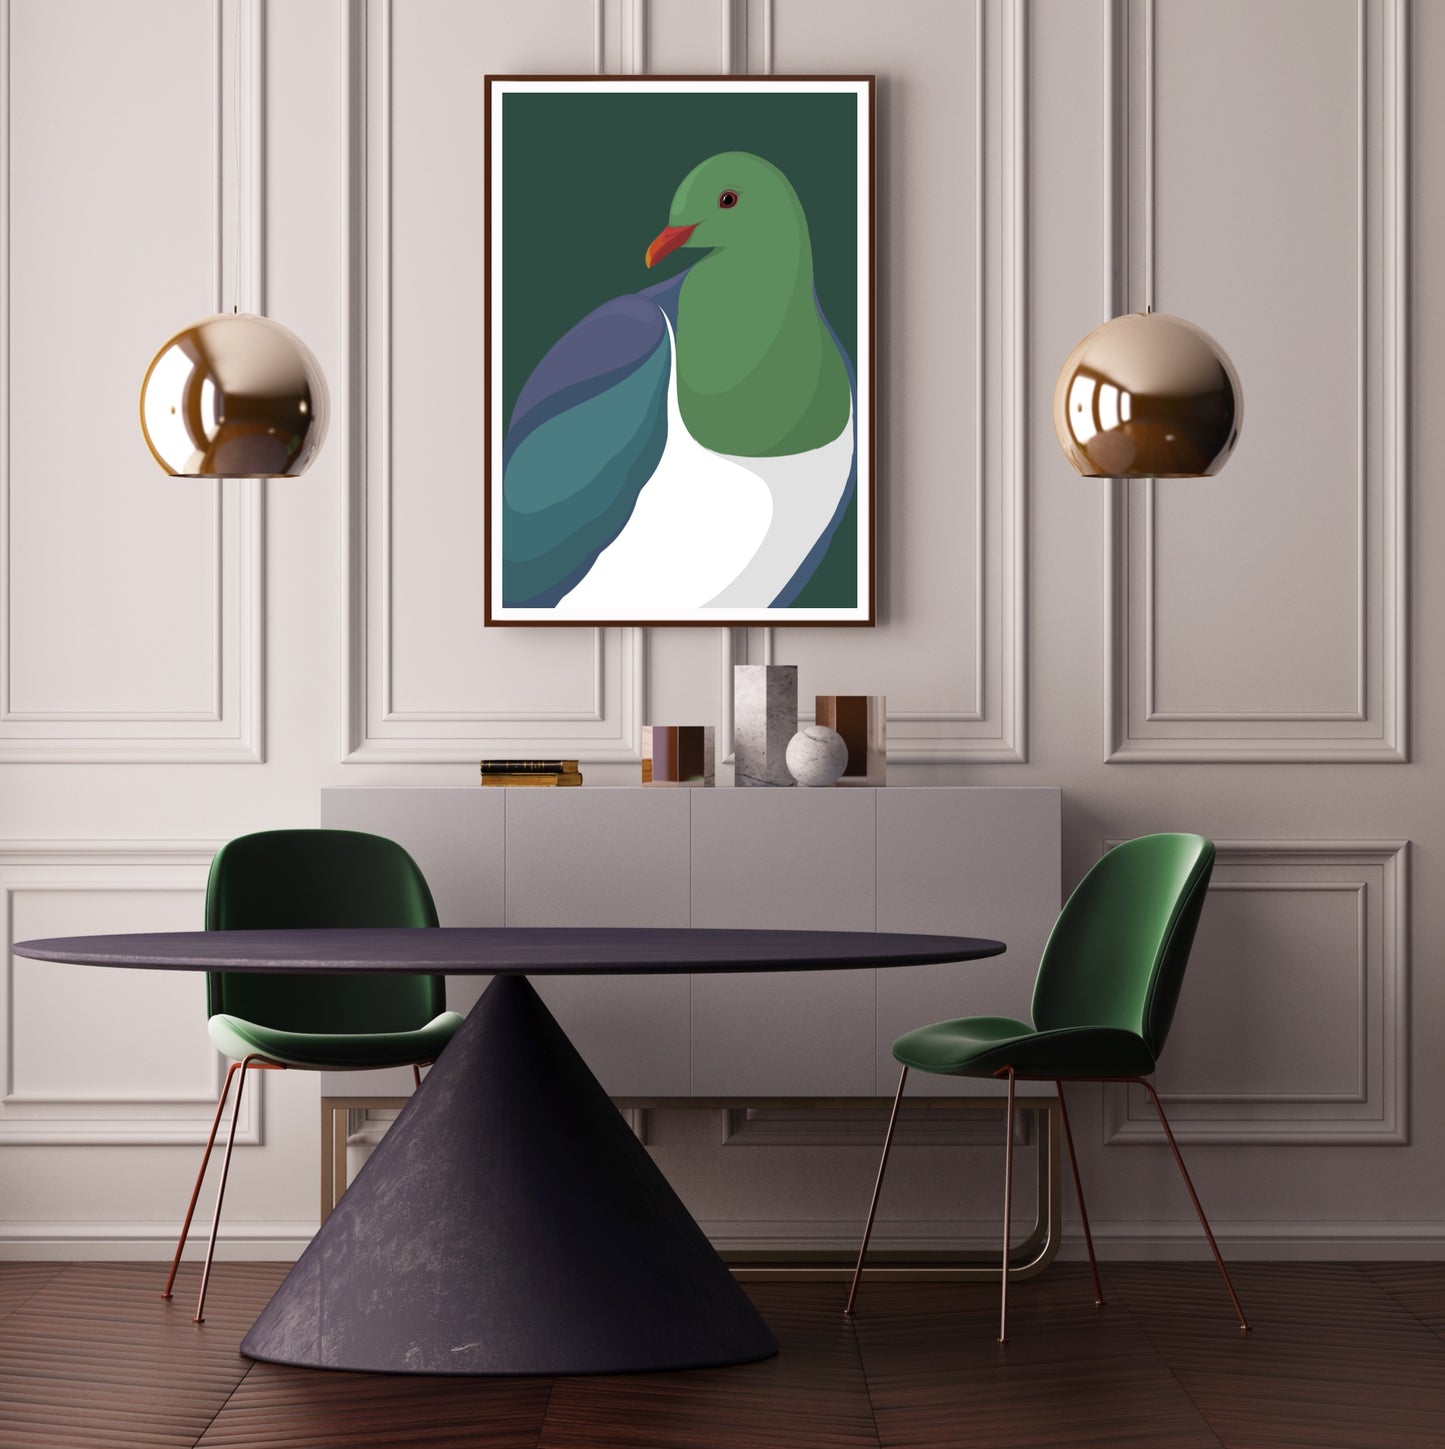 Framed art print of the Kereru bird, New Zealand wood pigeon by Hansby Design